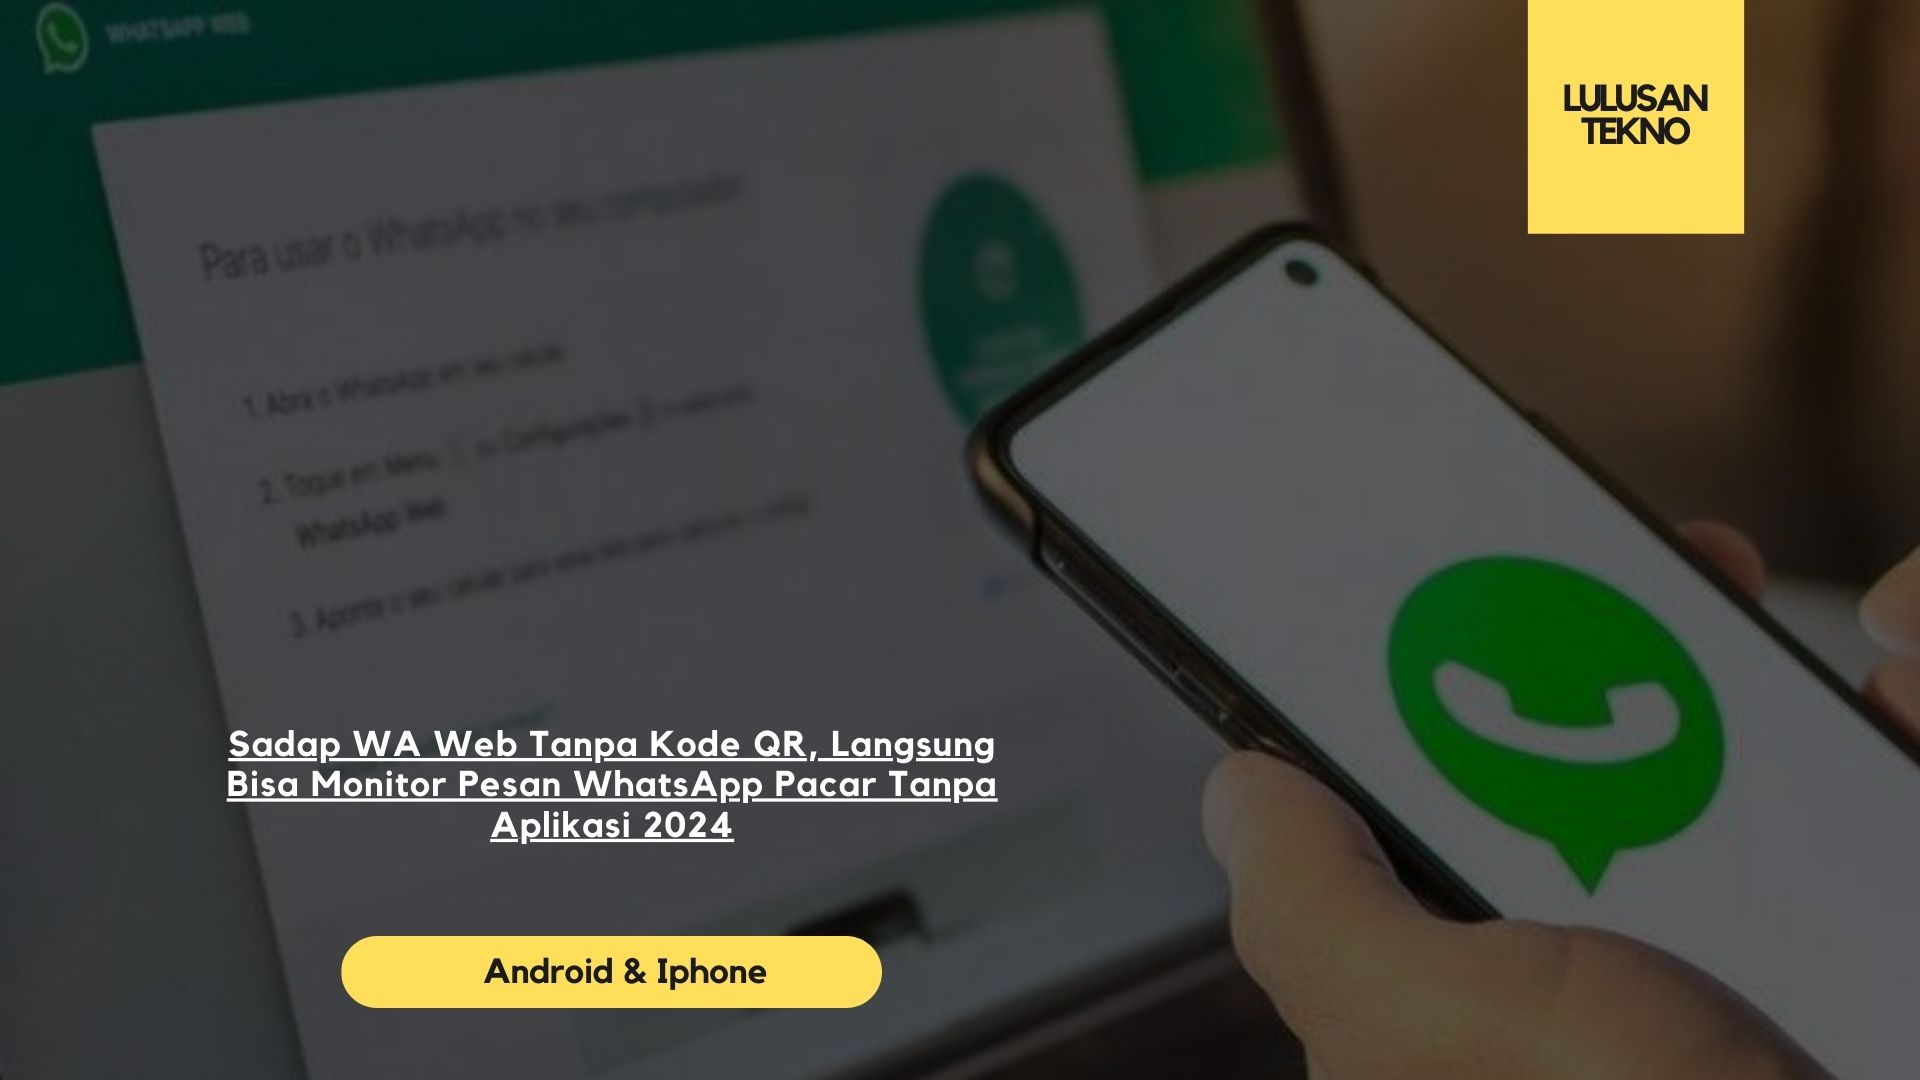 Sadap WA Web Tanpa Kode QR, Langsung Bisa Monitor Pesan WhatsApp Pacar Tanpa Aplikasi 2024